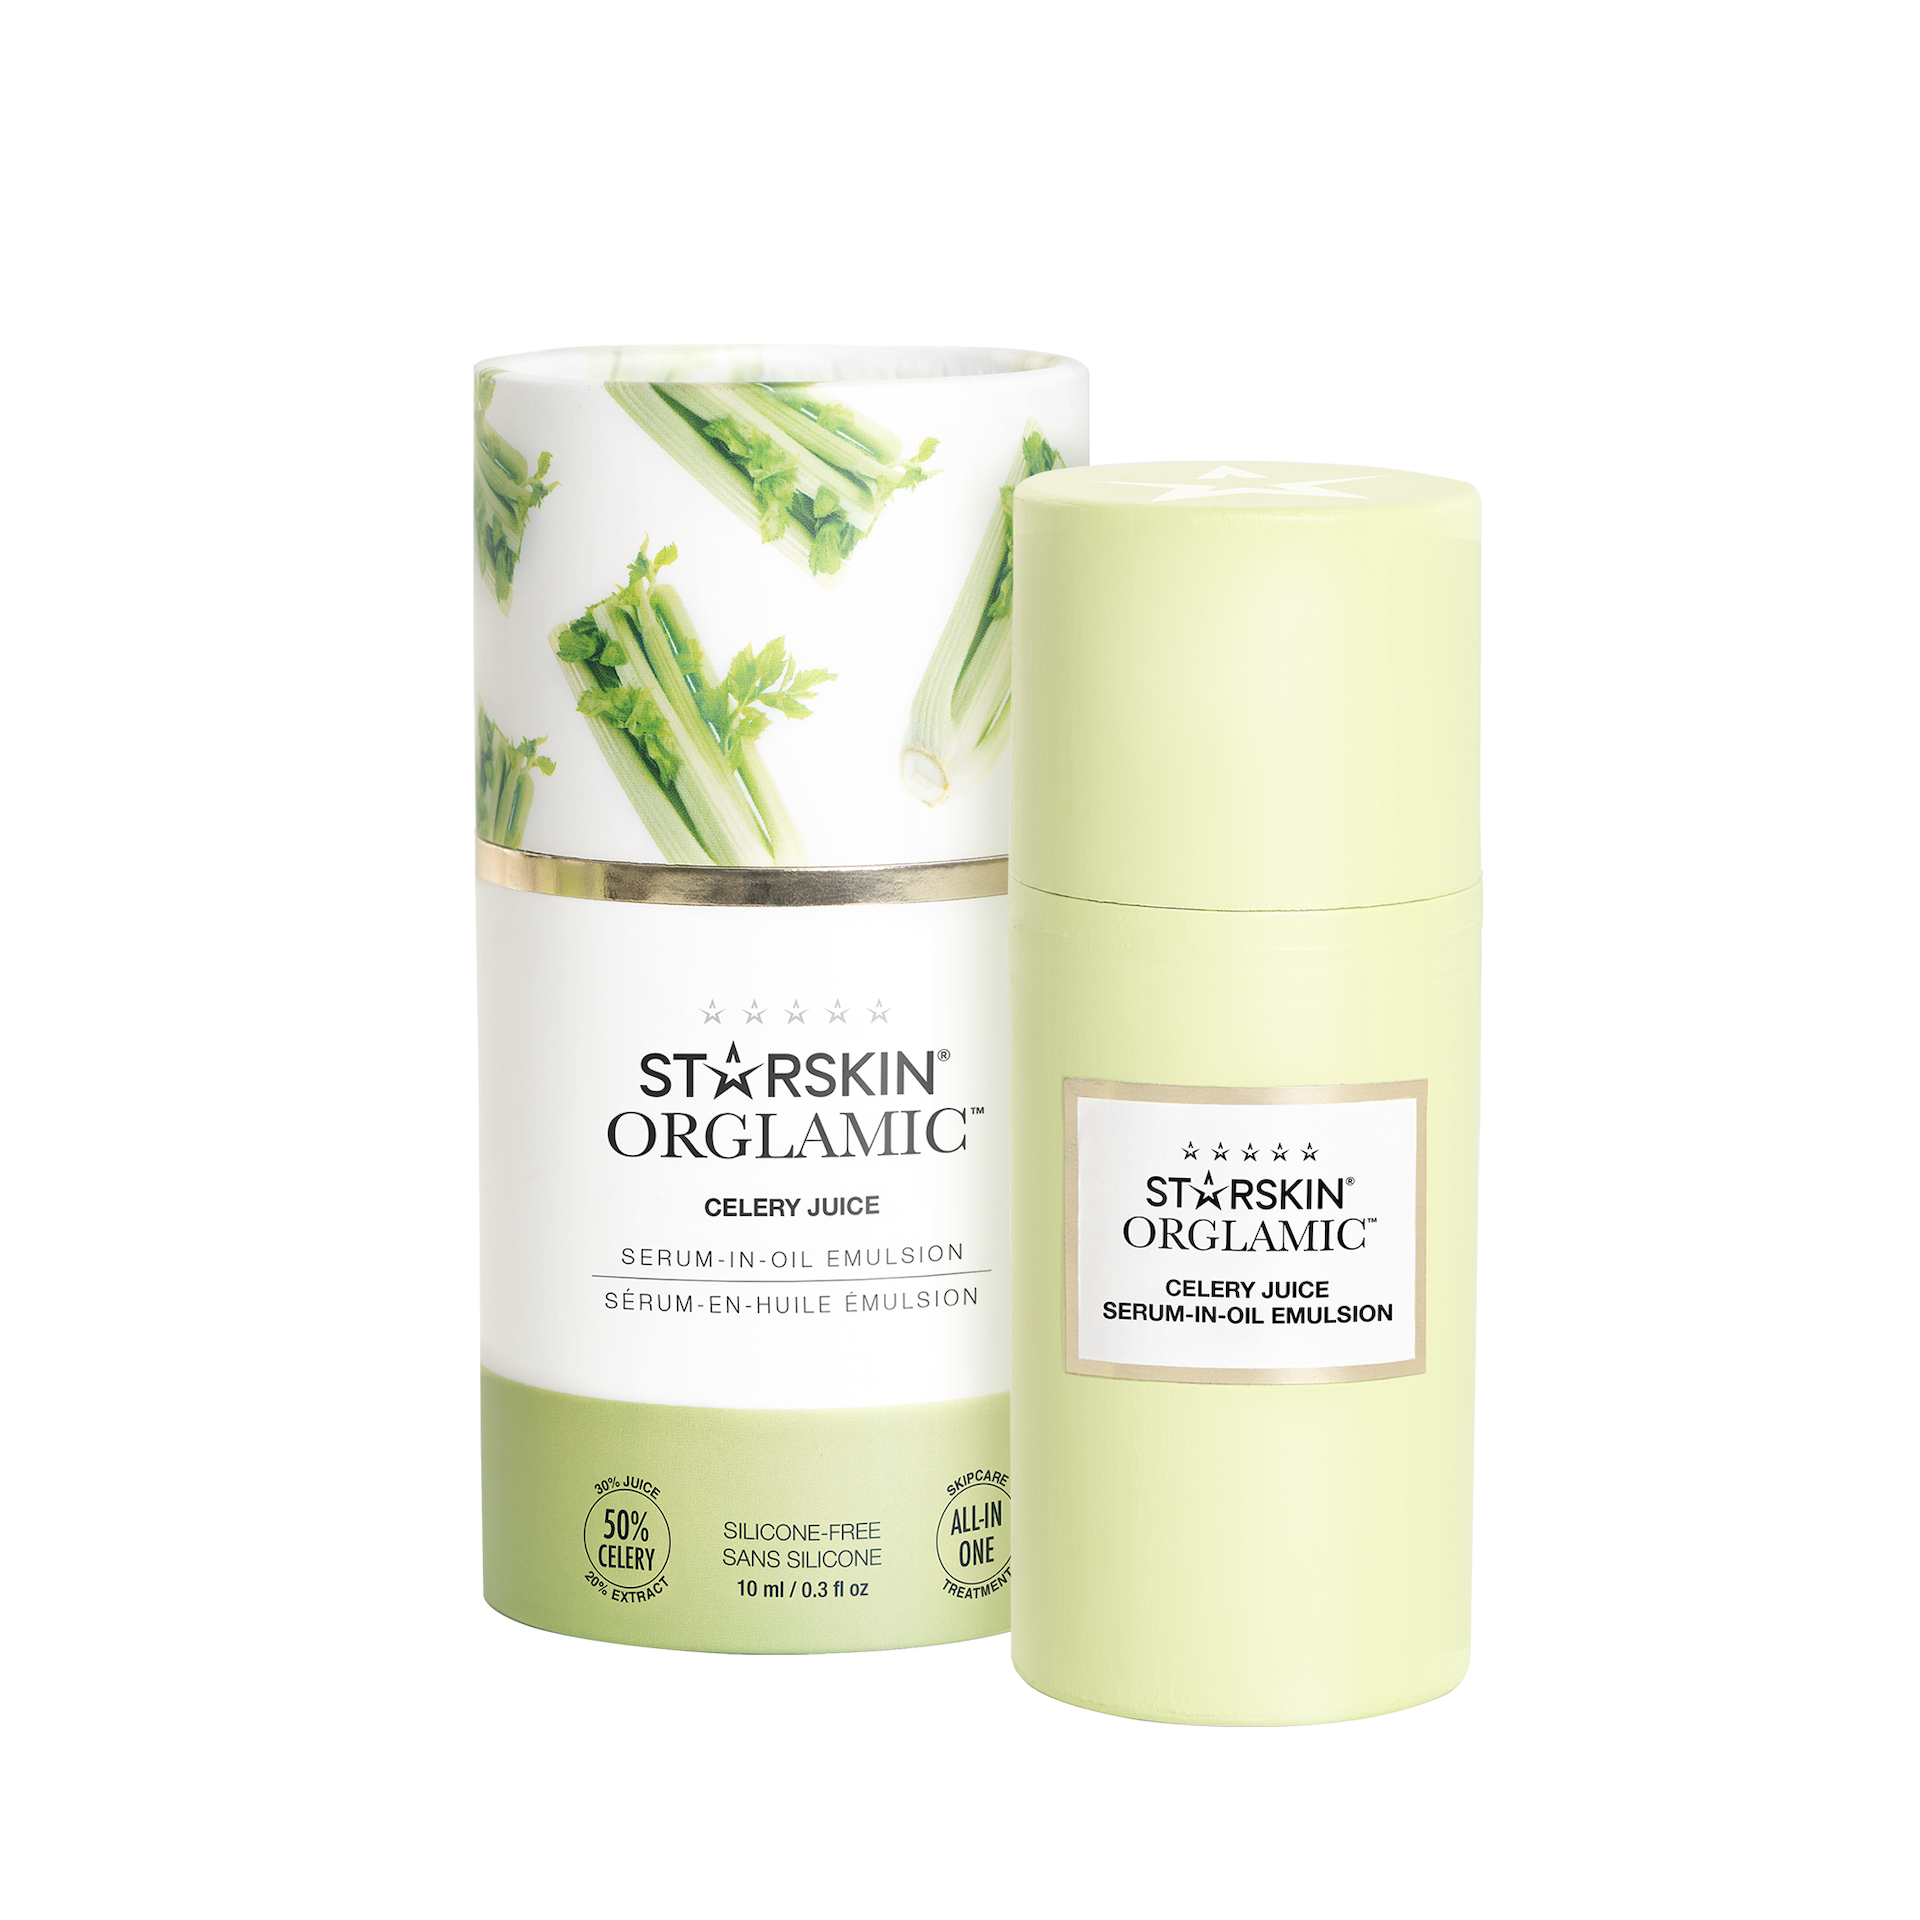 Starskin Celery Juice Serum In Oil Emulsion 10ml